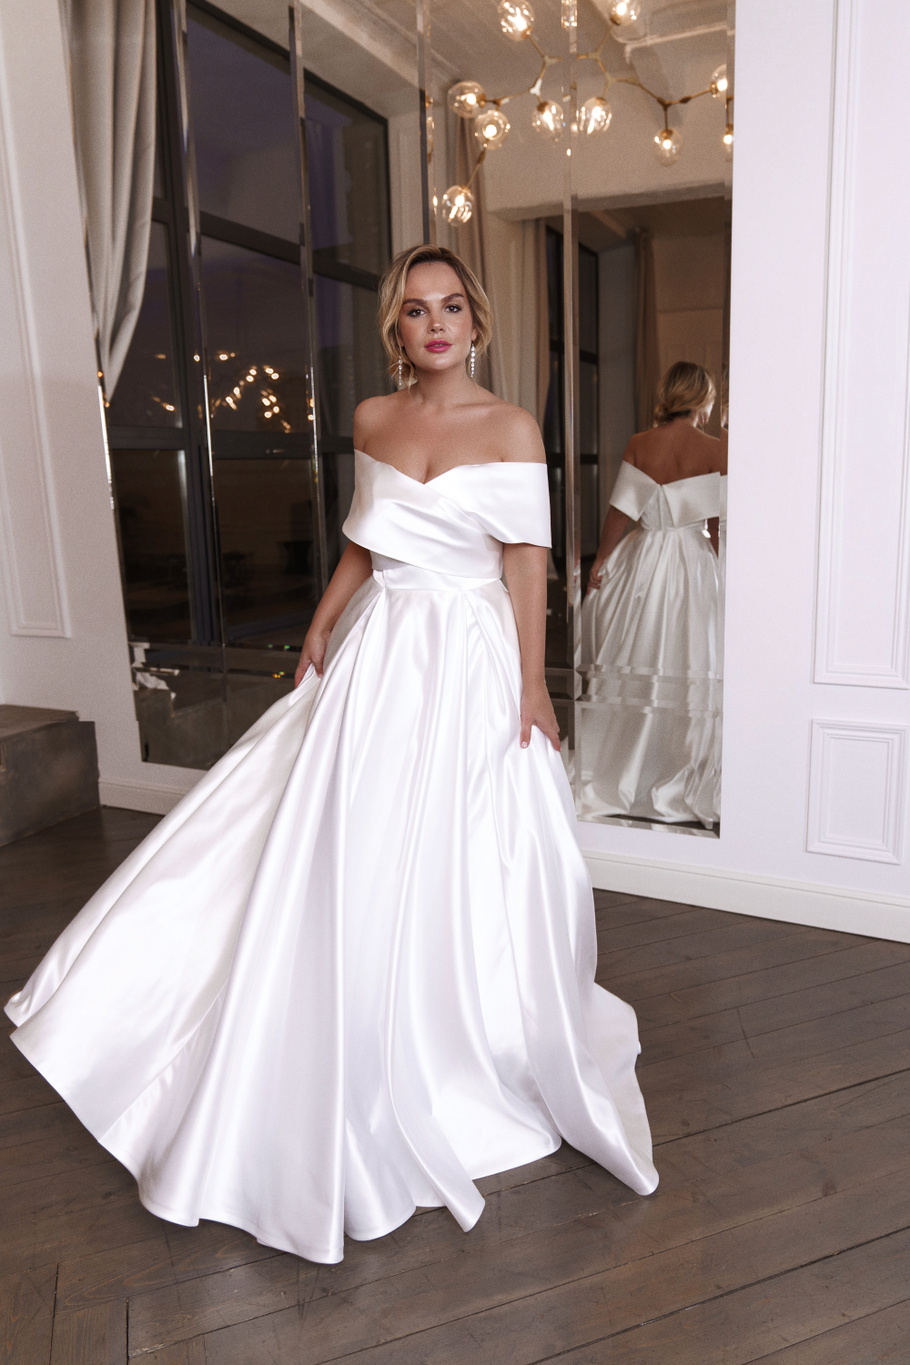 Свадебное платье «Ивон плюс сайз» Марта — купить в Москве платье Ивон из коллекции 2019 года